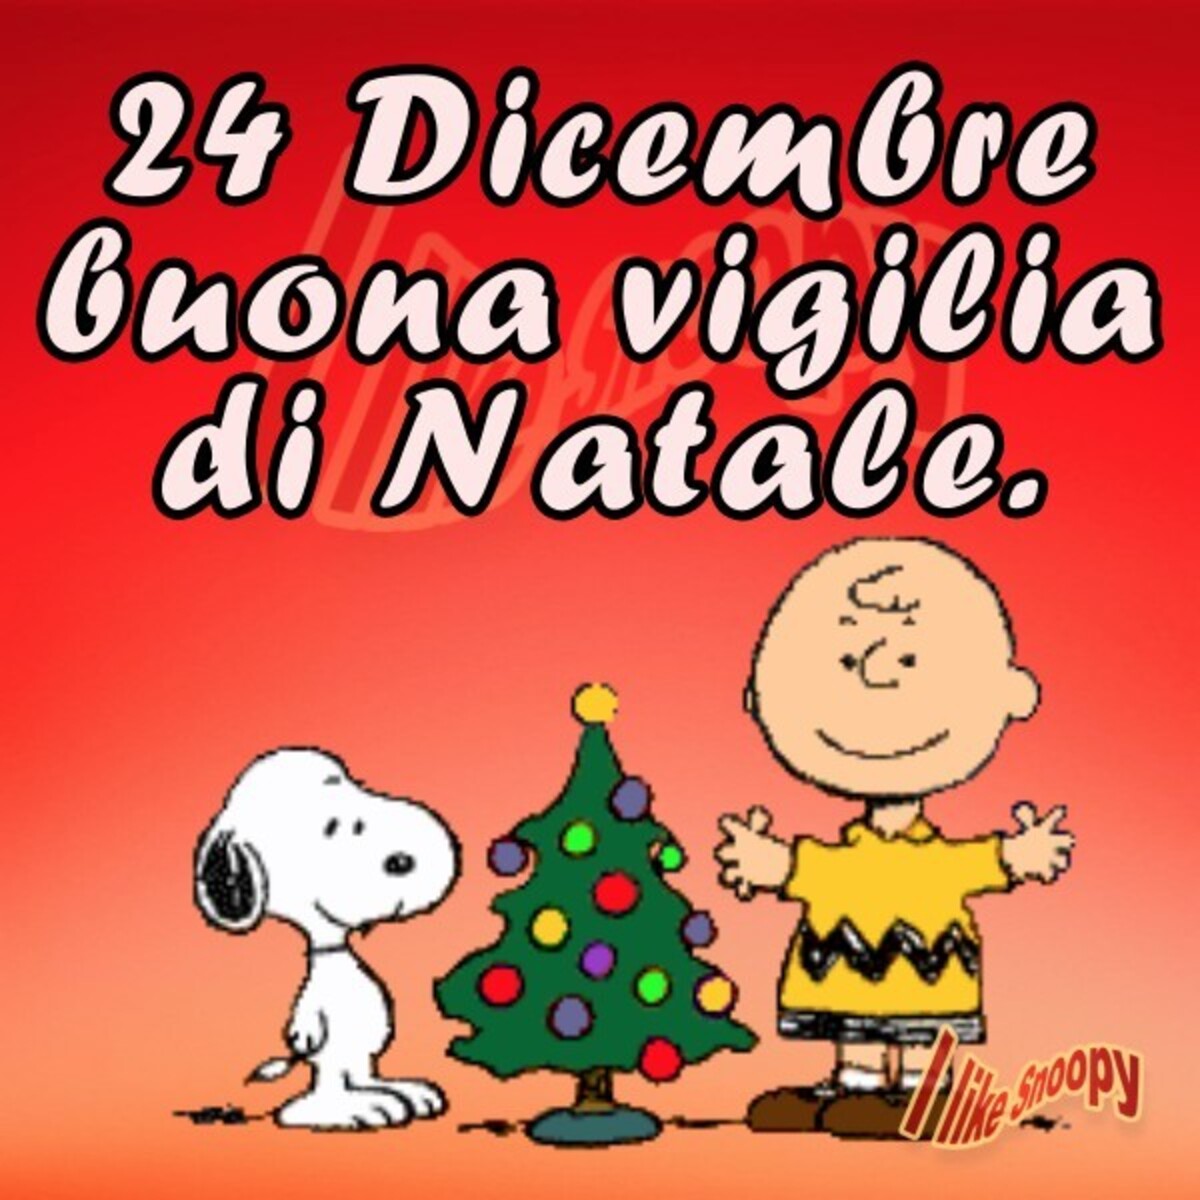 24 Dicembre Buona Vigilia di Natale (Snoopy)